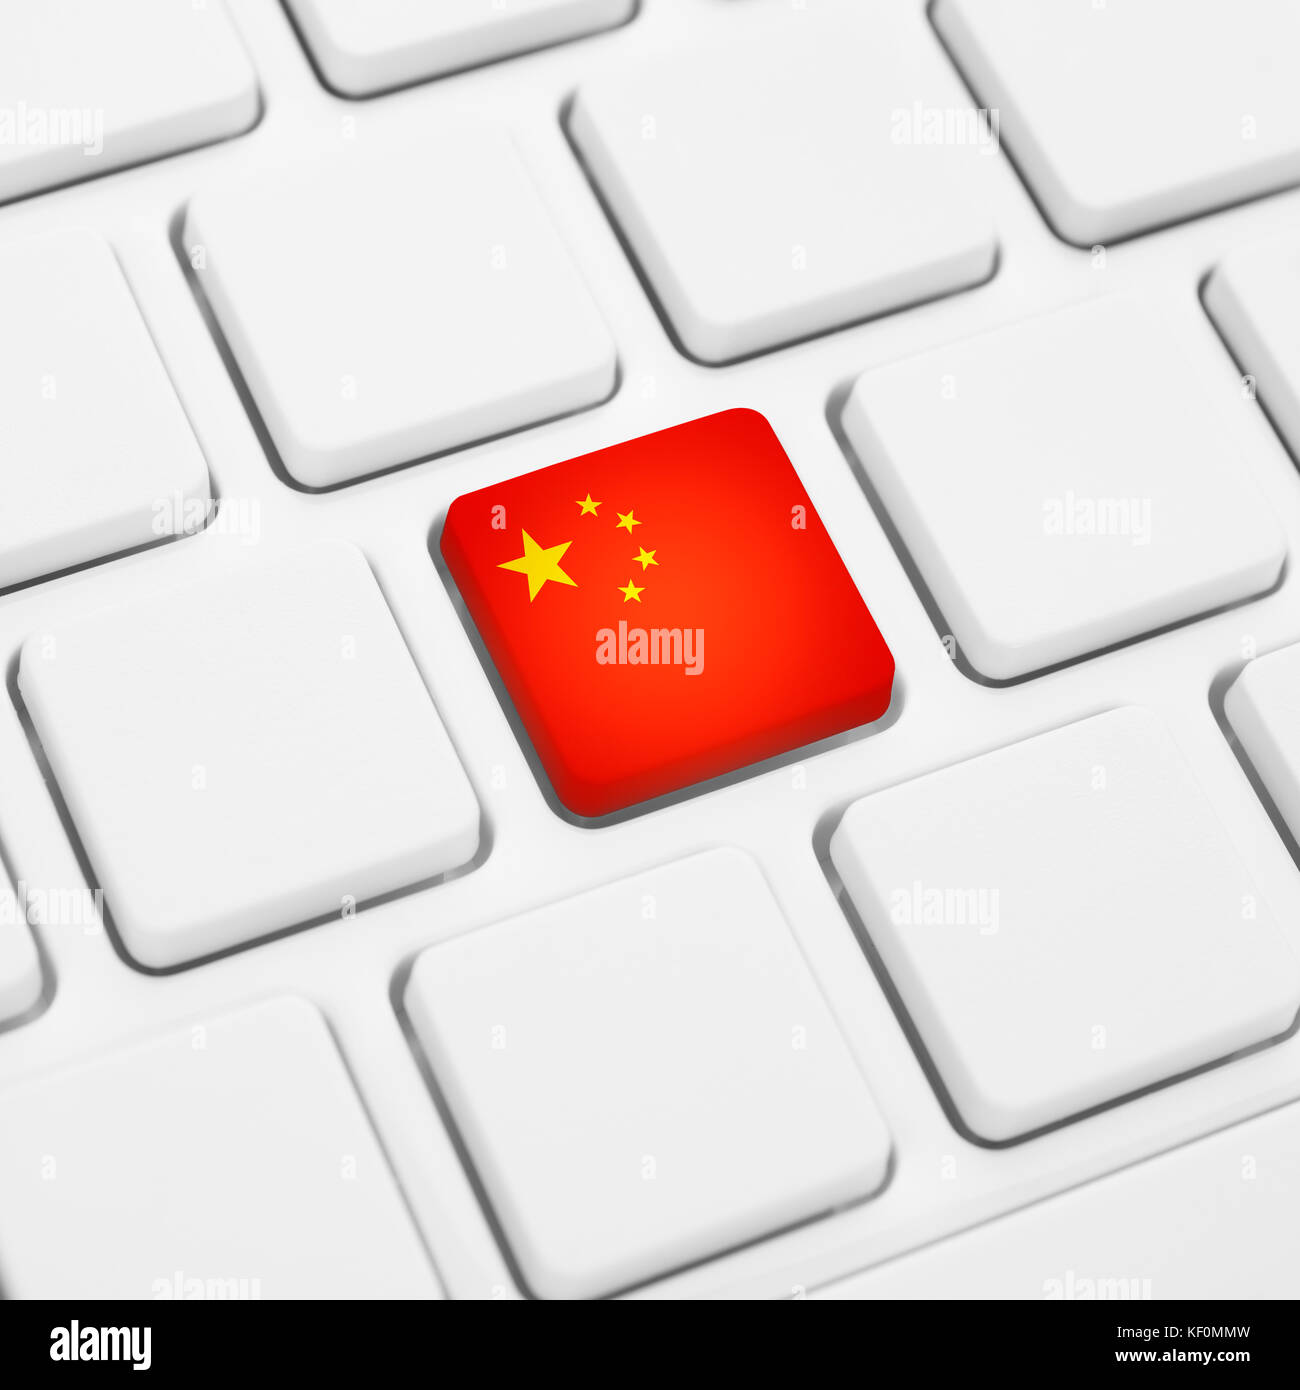 Chinesische Schriftzeichen oder China web Konzept. nationalflagge  Schaltfläche oder Taste auf weiße Tastatur Stockfotografie - Alamy